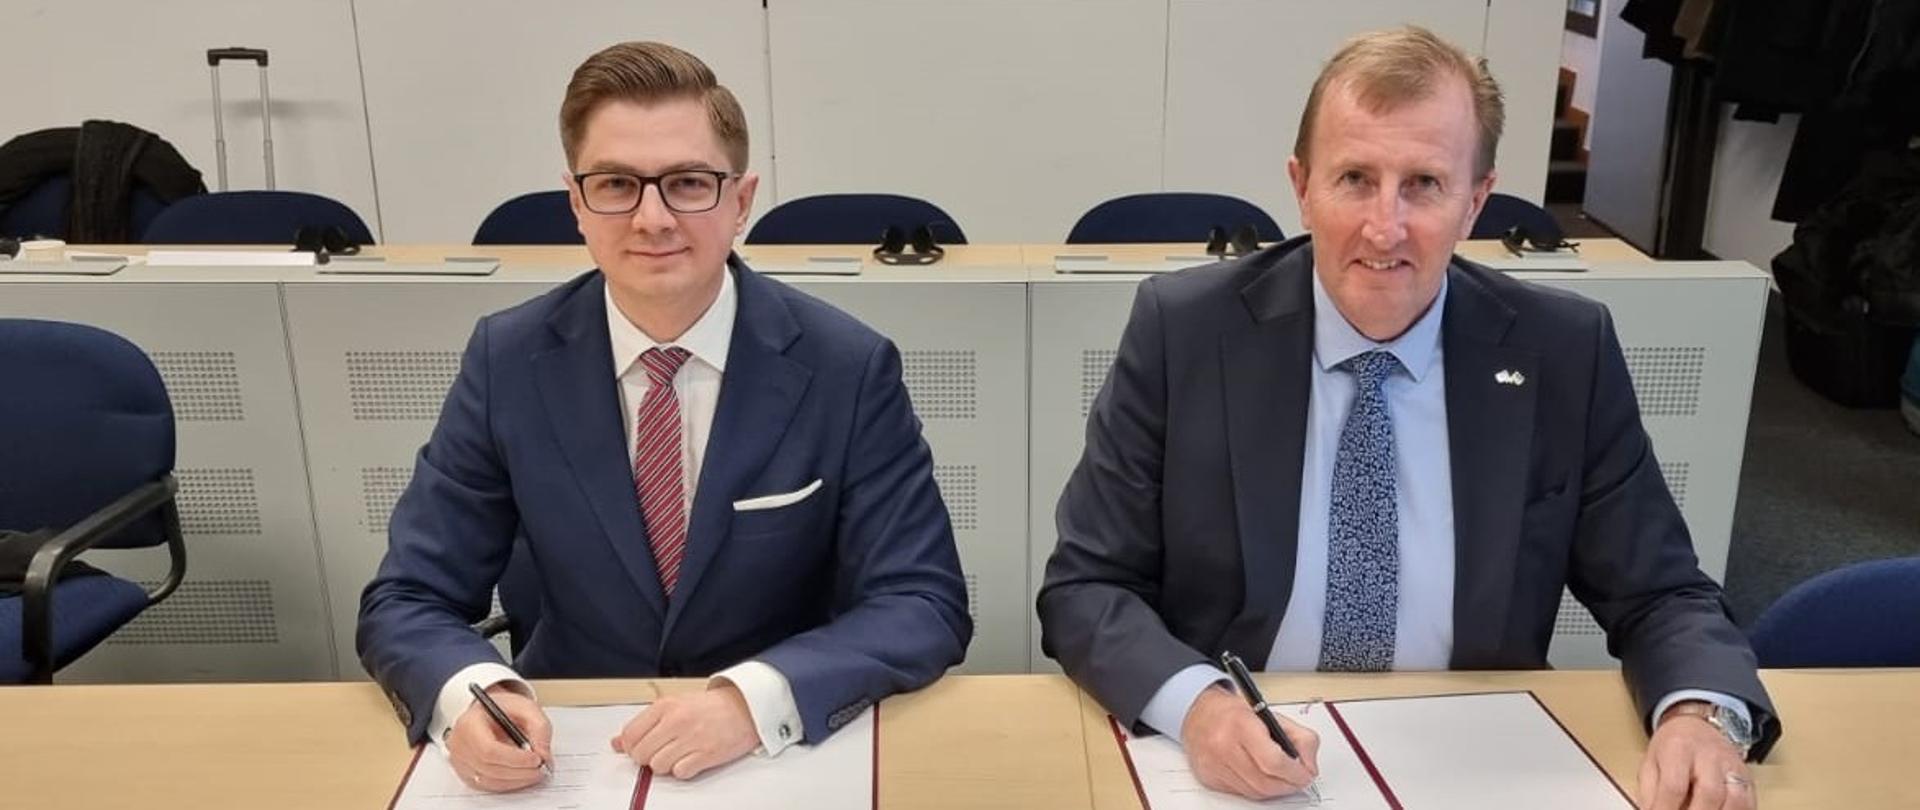 Prezes PAA dr Łukasz Młynarkiewicz oraz Mark Foy, Główny Inspektor ds. Jądrowych Wielkiej Brytanii podpisują porozumienie o współpracy